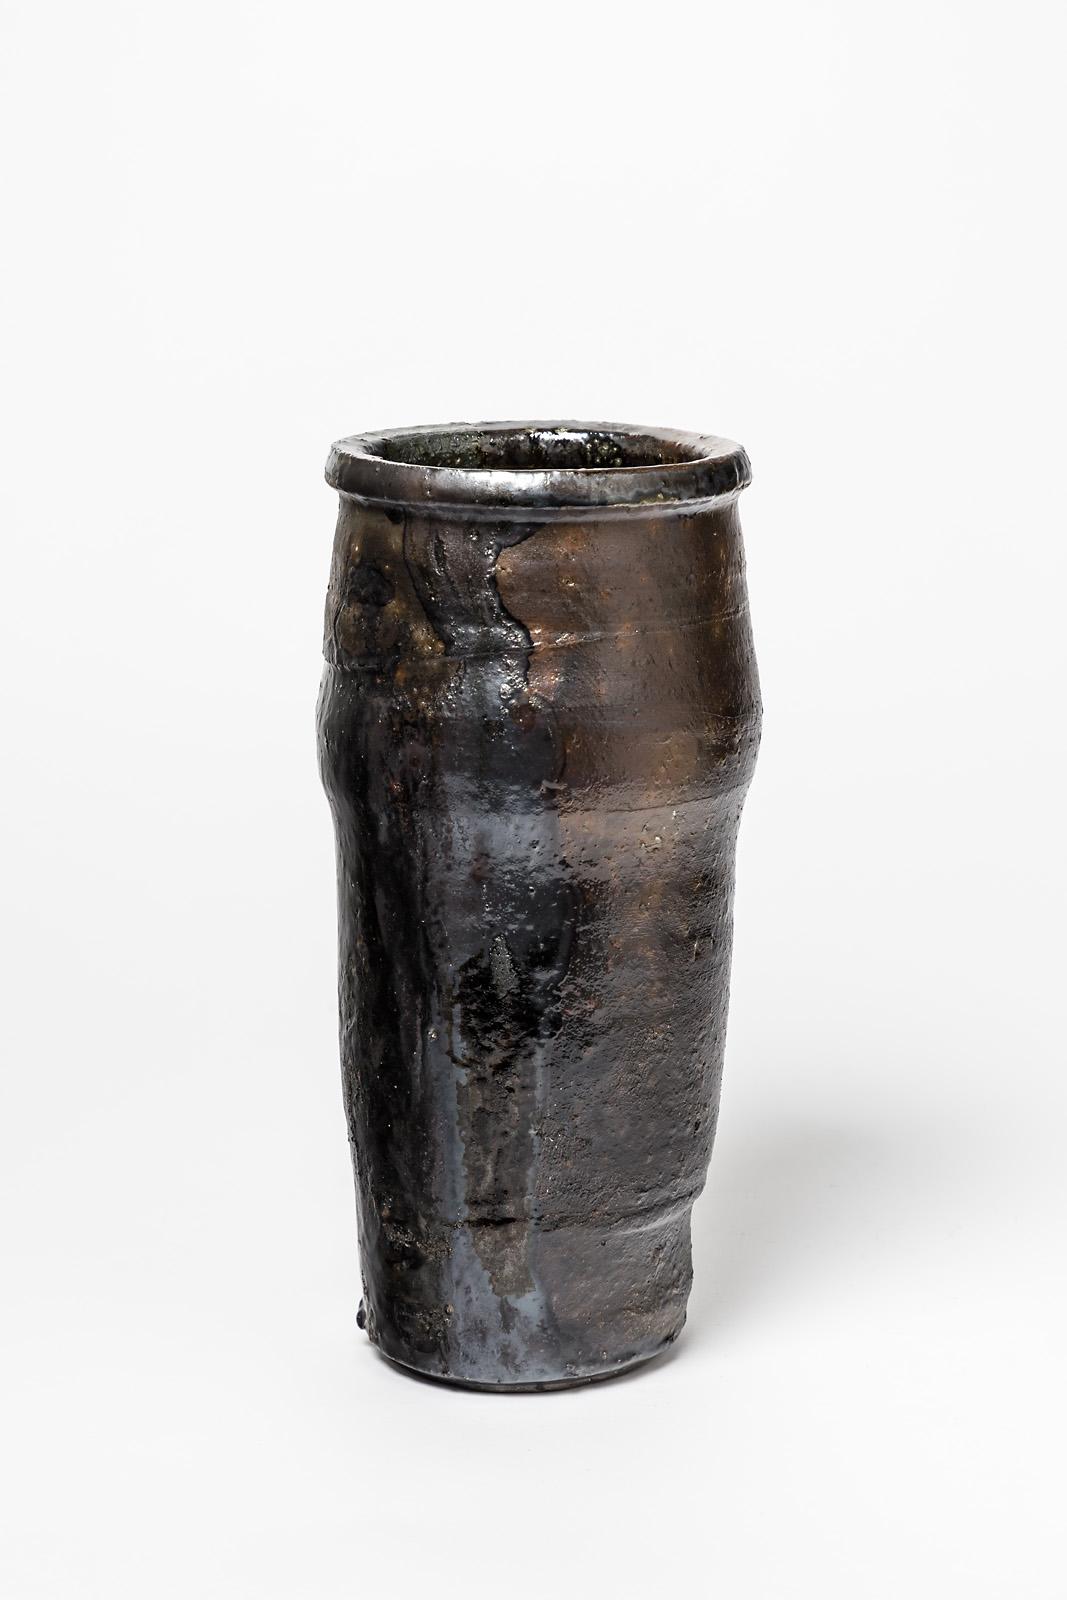 Un vase en céramique de Camille Virot.
Conditions d'origine parfaites.
Signé à la base.
Vers 1990-2000.
Pièce unique.